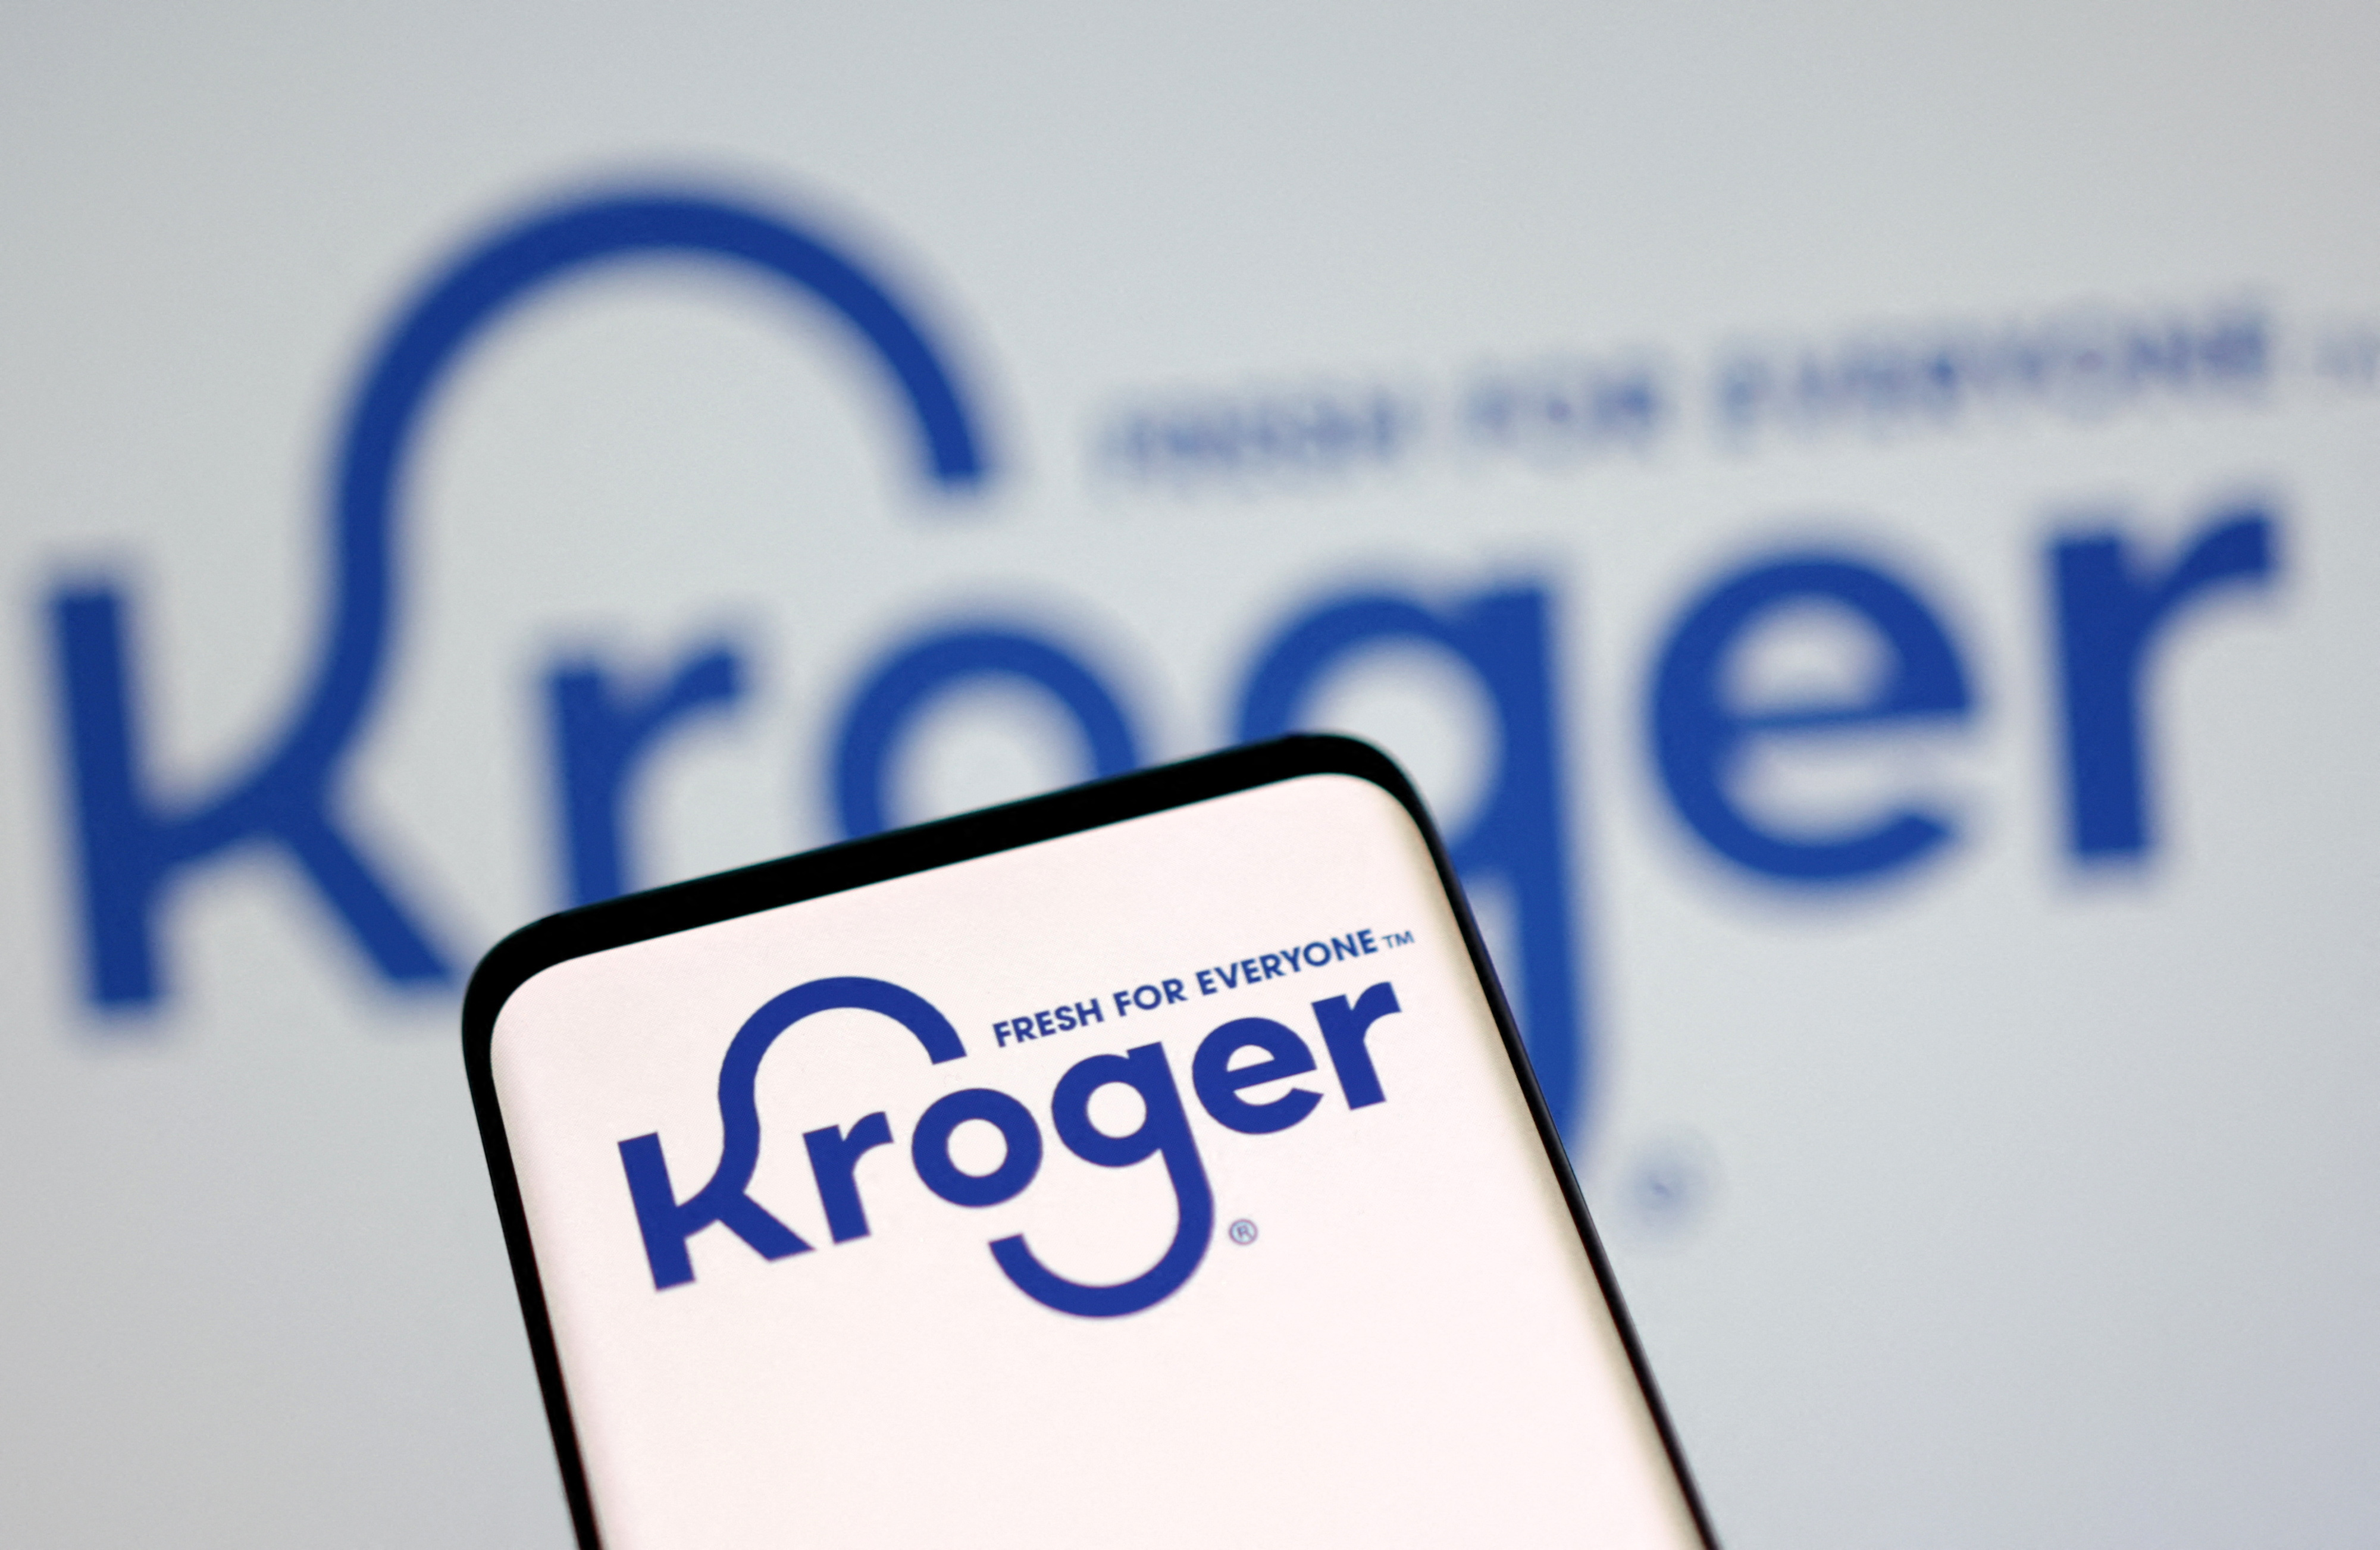 Illustration shows Kroger logo